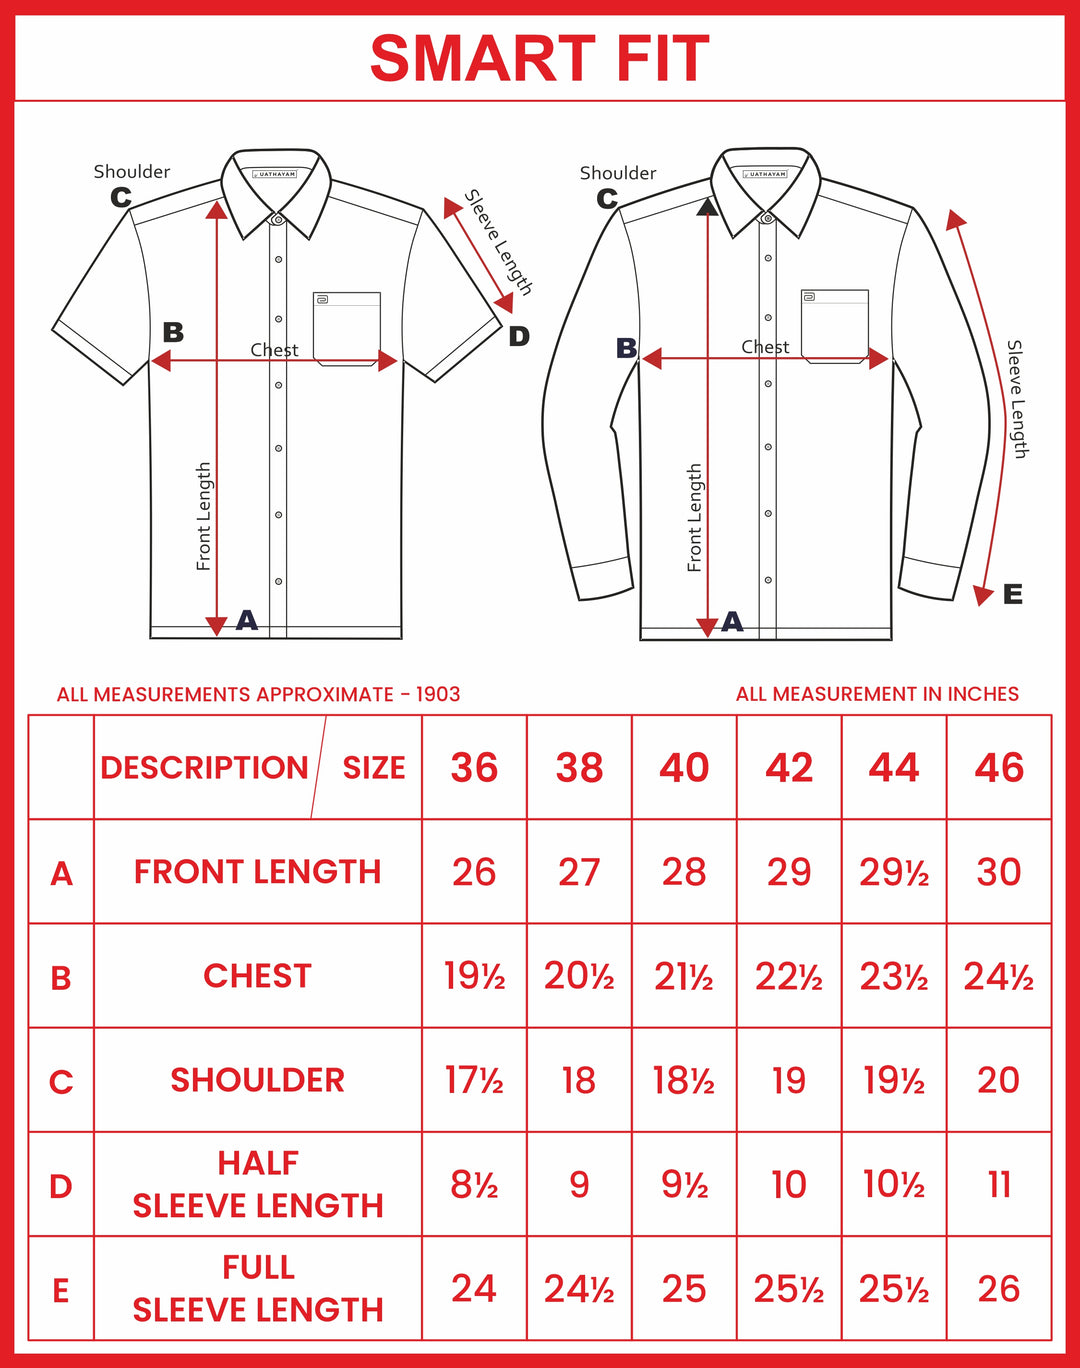 Ariser Linen Feel Solid Cotton Rich Smart Fit Half Sleeve Shirt for Men - LF2013